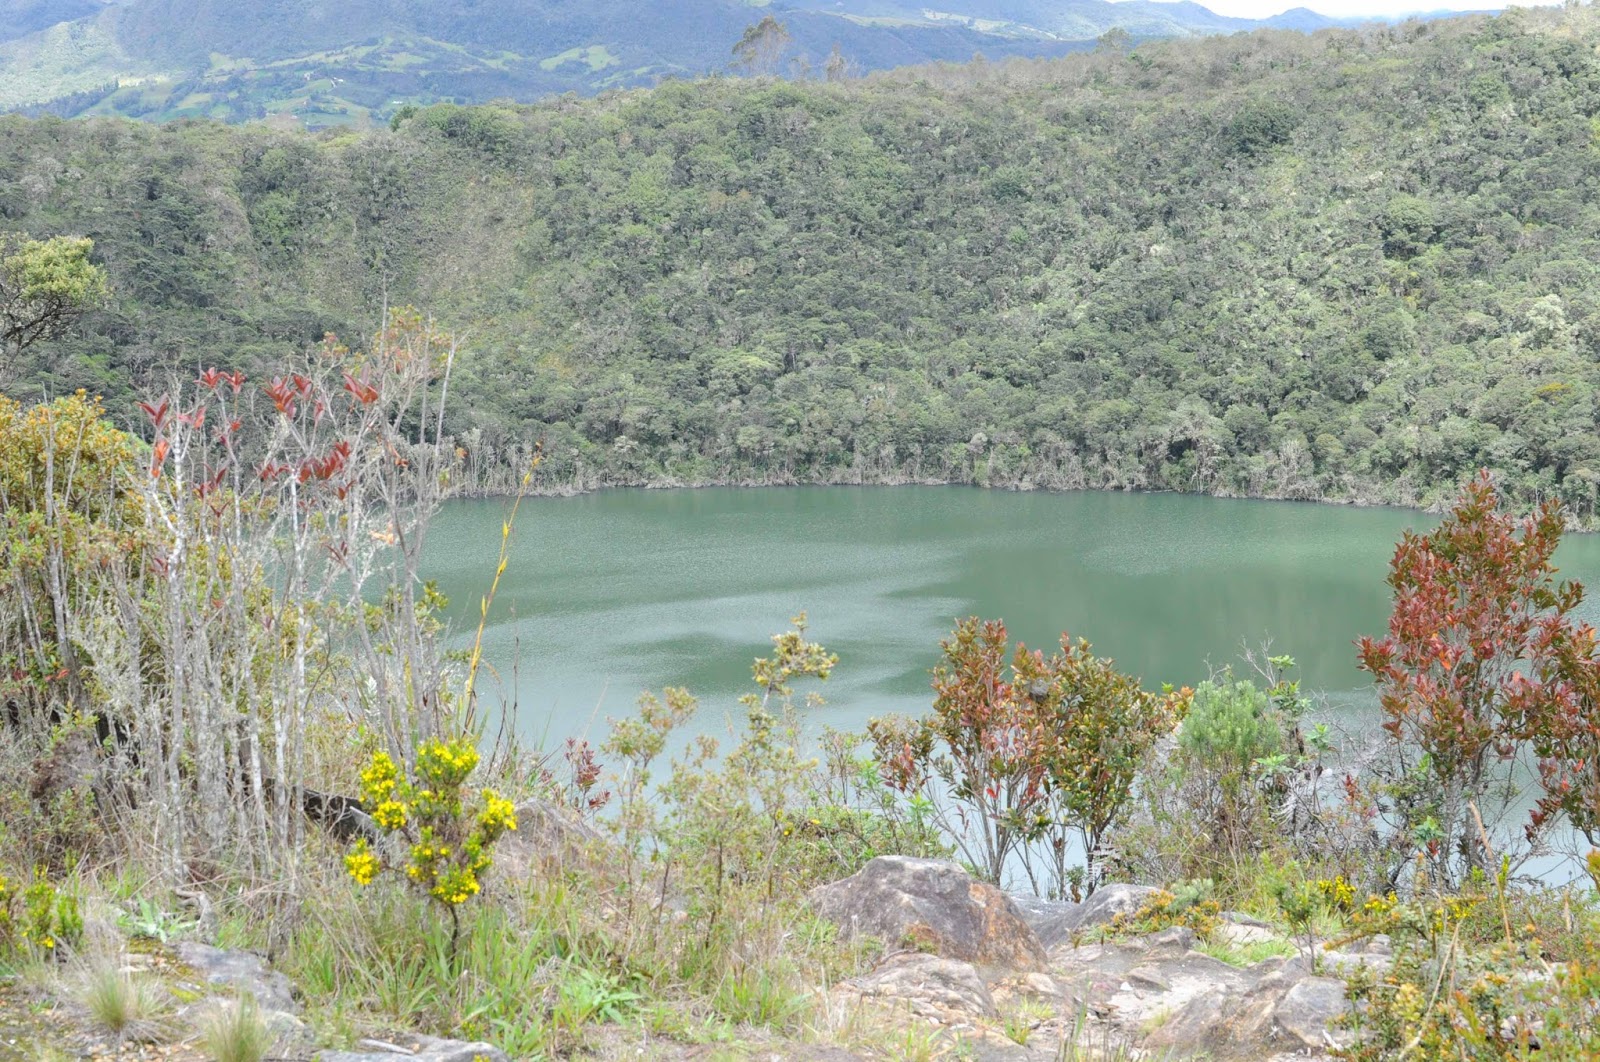 La laguna de Guatavita es un sitio para hacer turismo cerca a Bogotá